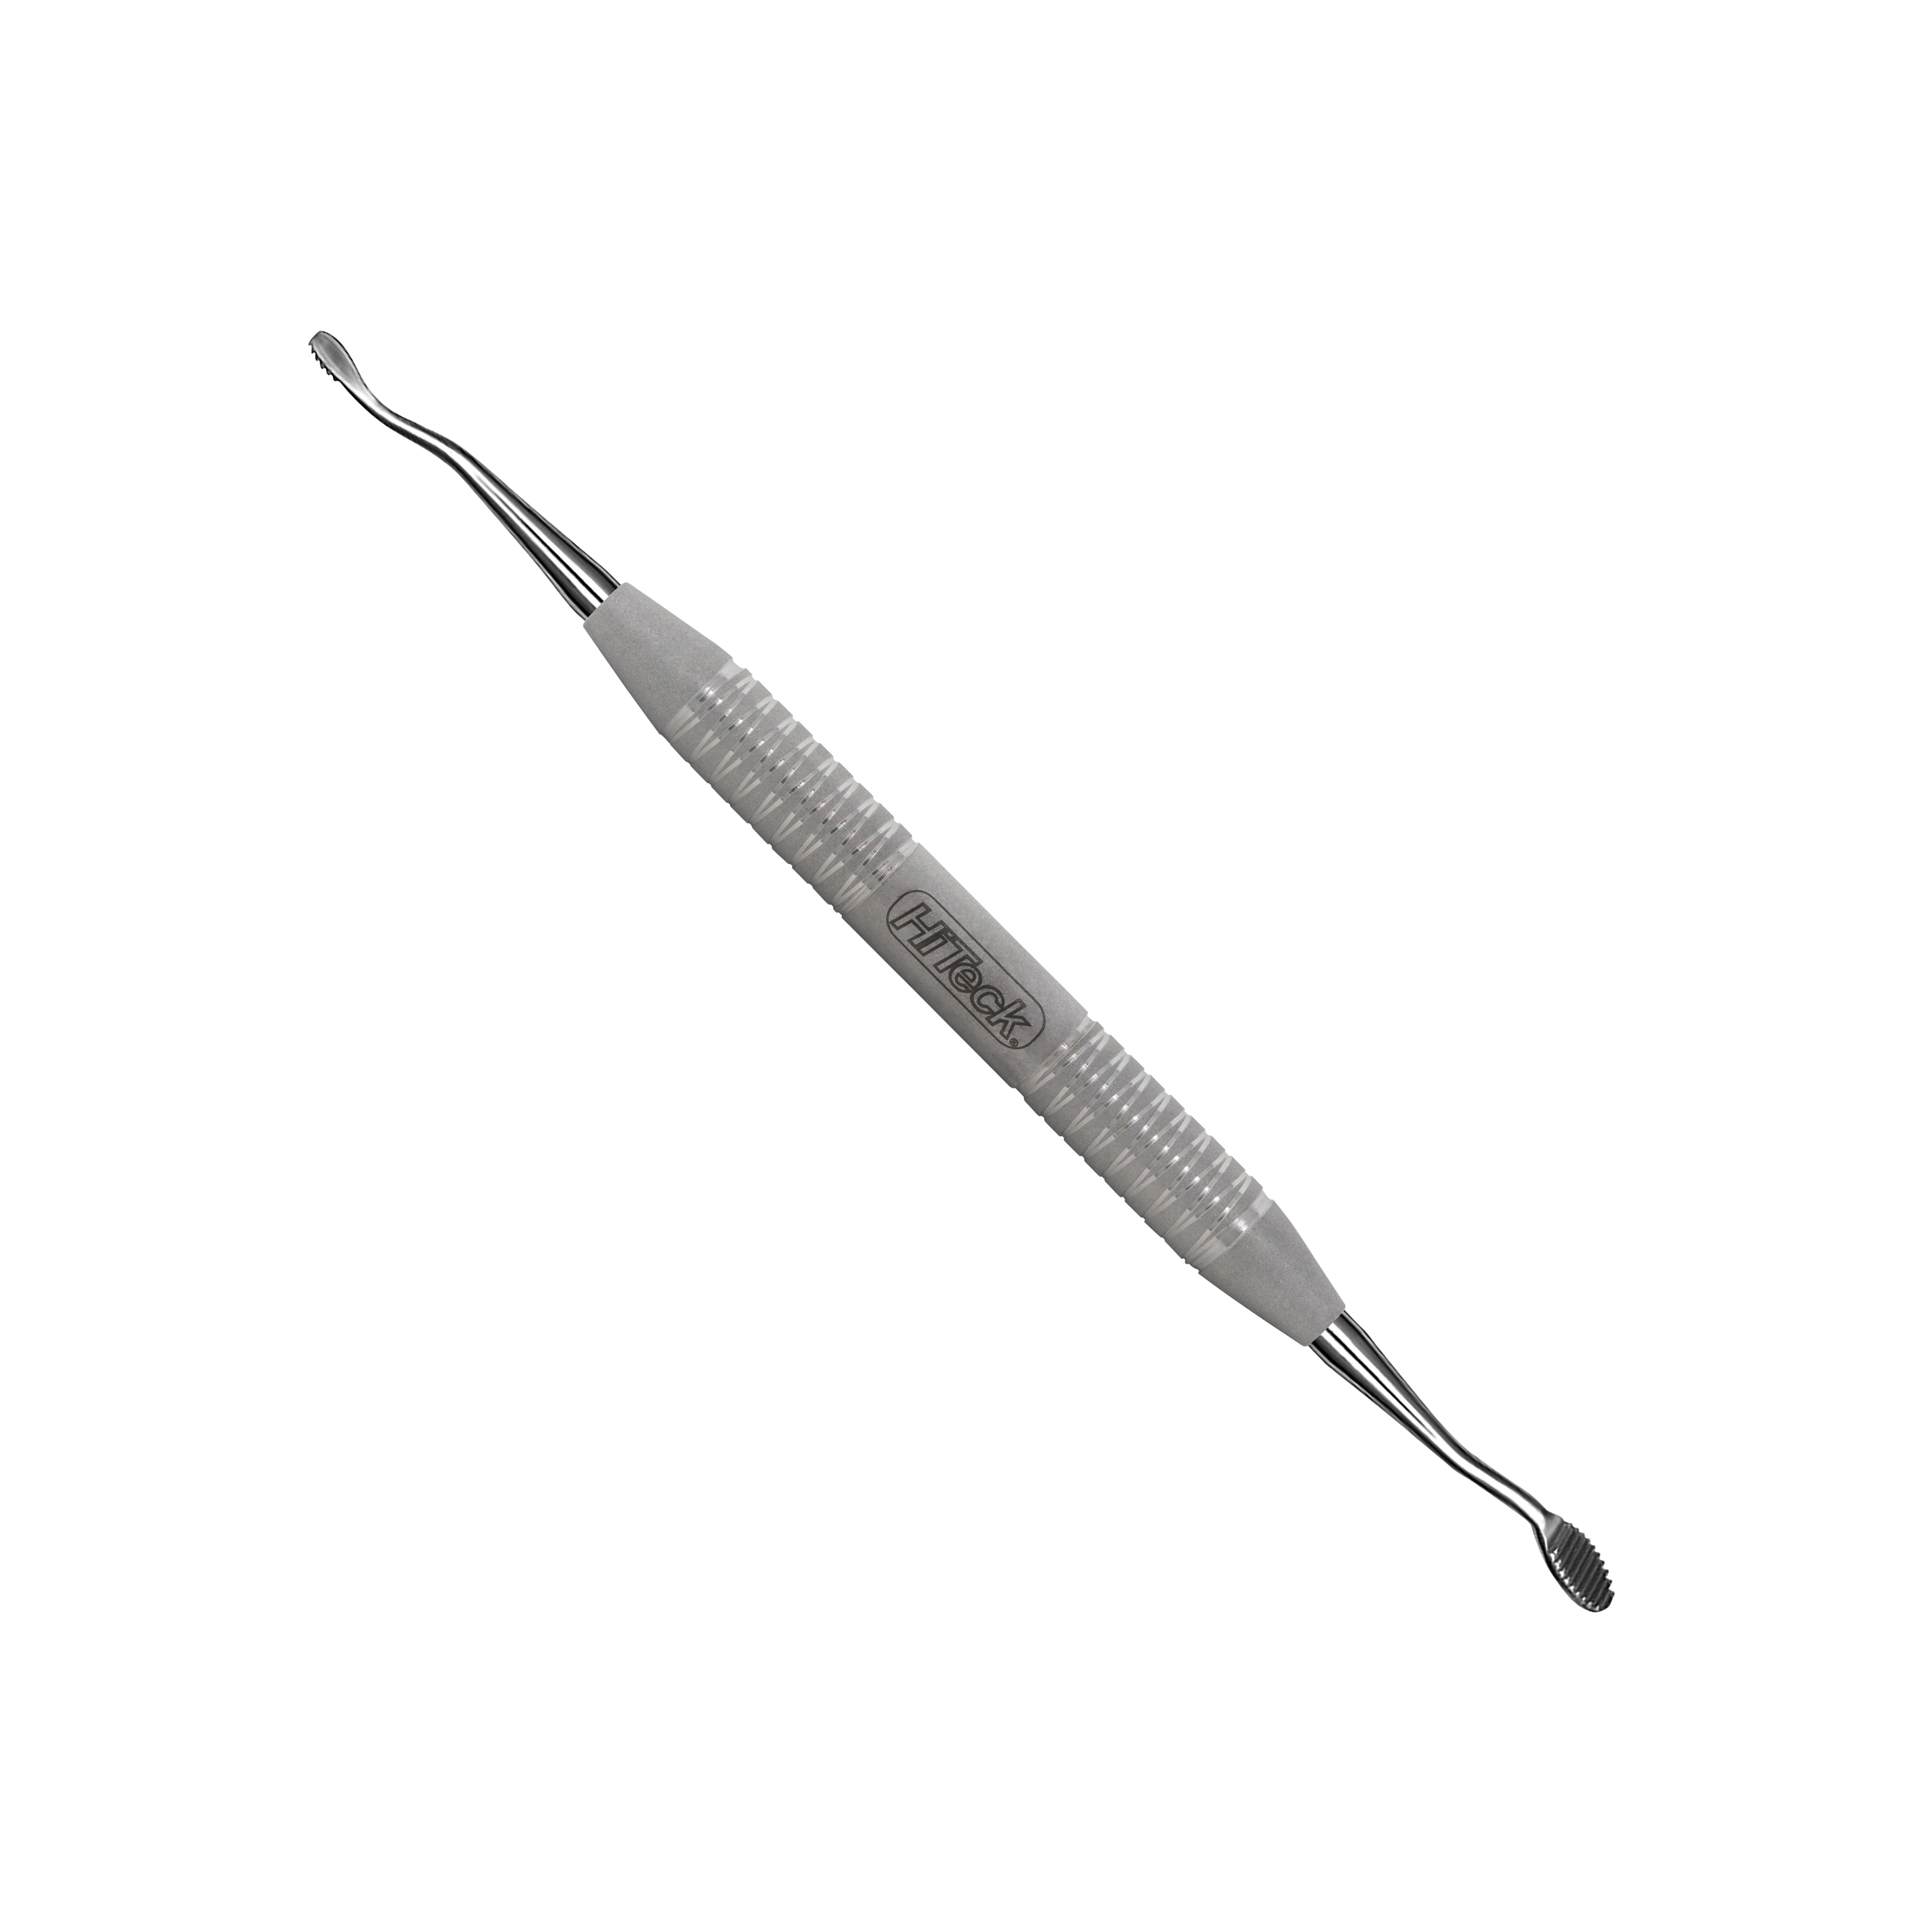 21 Miller Surgical Bone File - HiTeck Medical Instruments